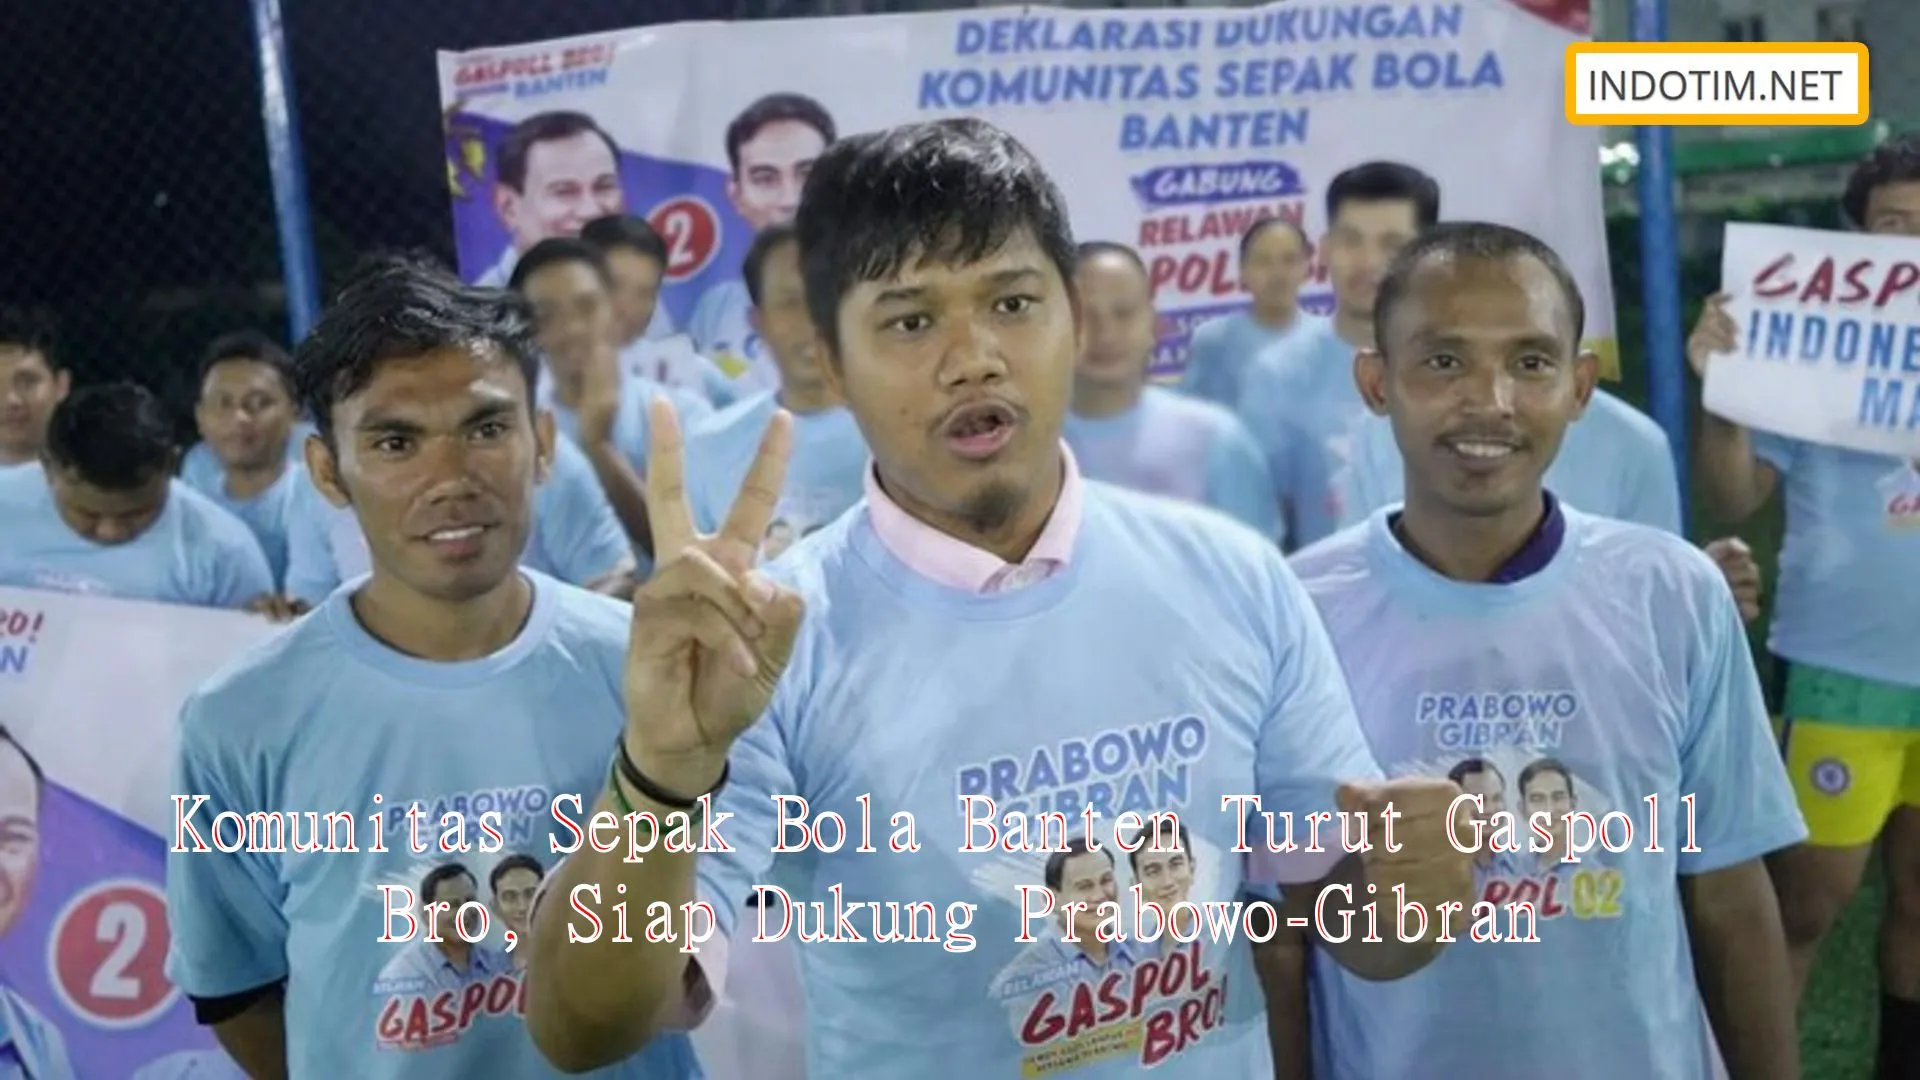 Komunitas Sepak Bola Banten Turut Gaspoll Bro, Siap Dukung Prabowo-Gibran